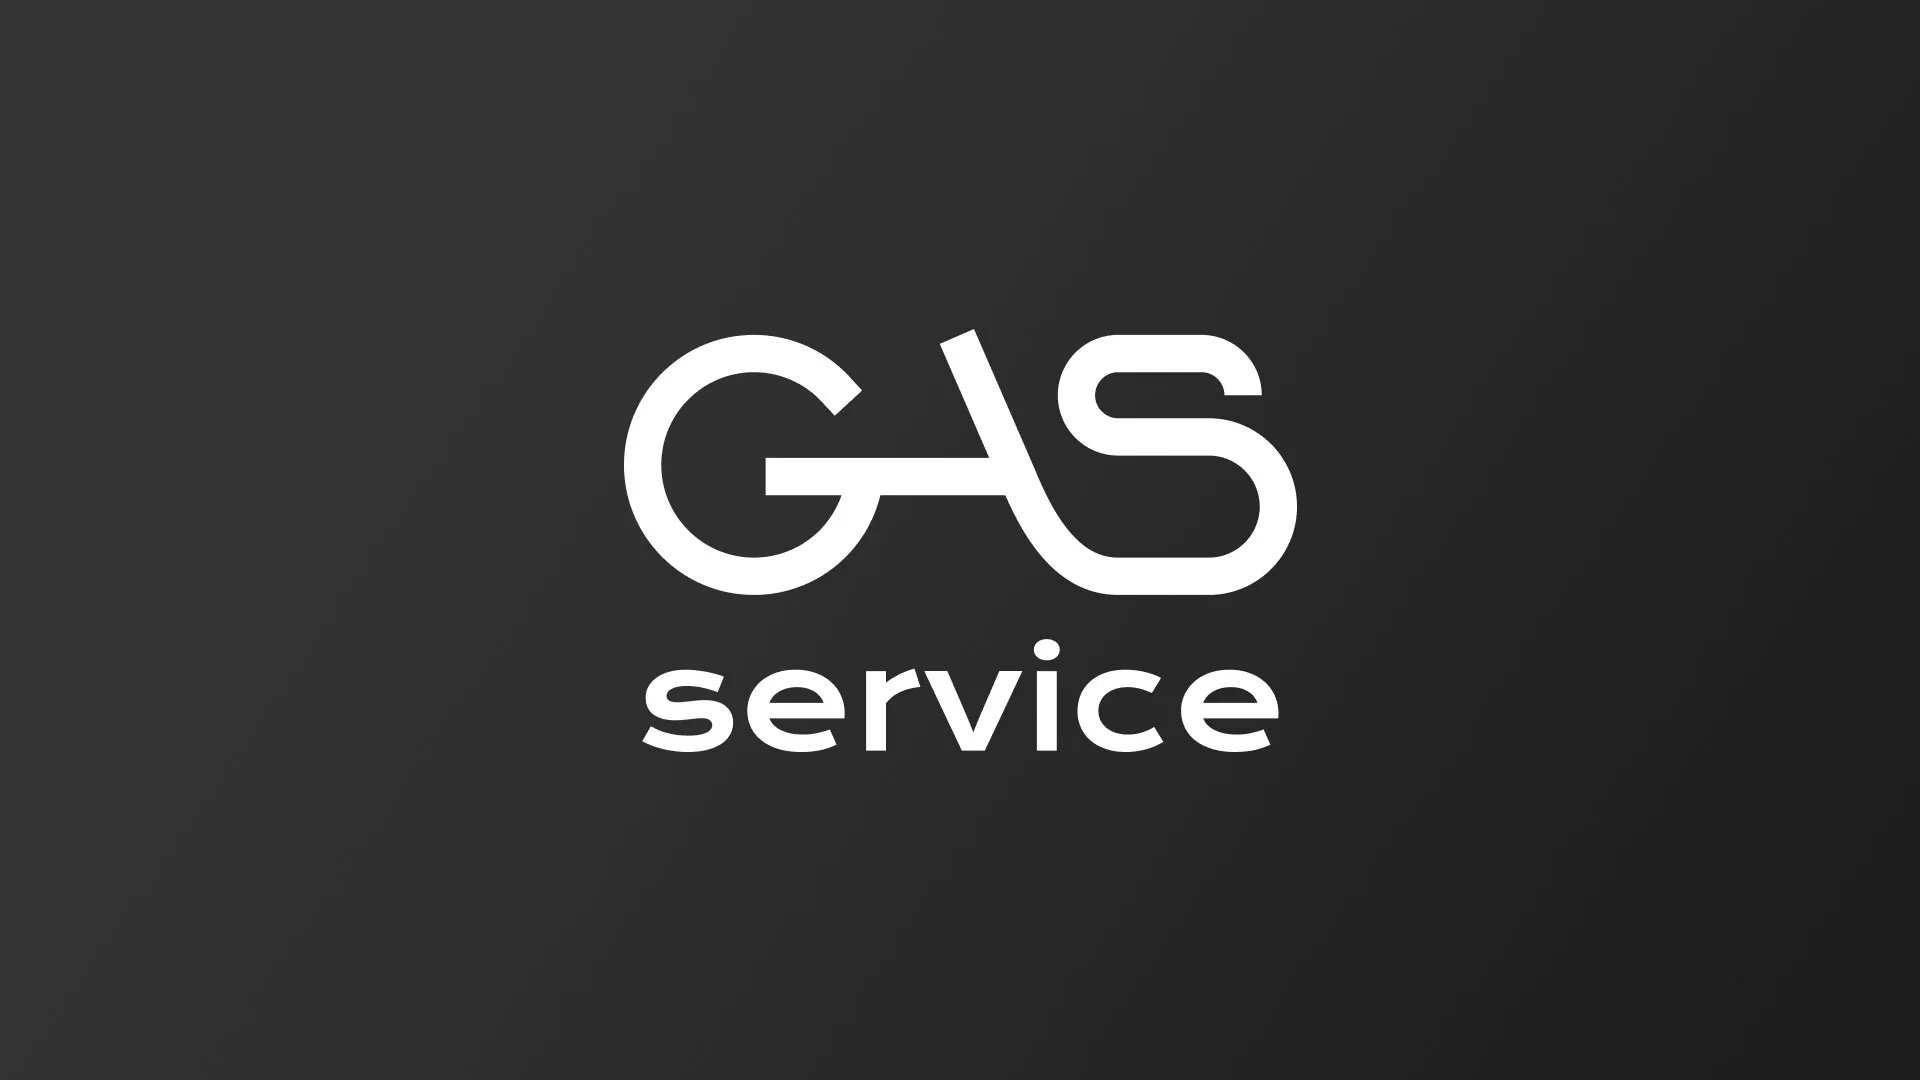 Разработка логотипа компании «Сервис газ» в Майском